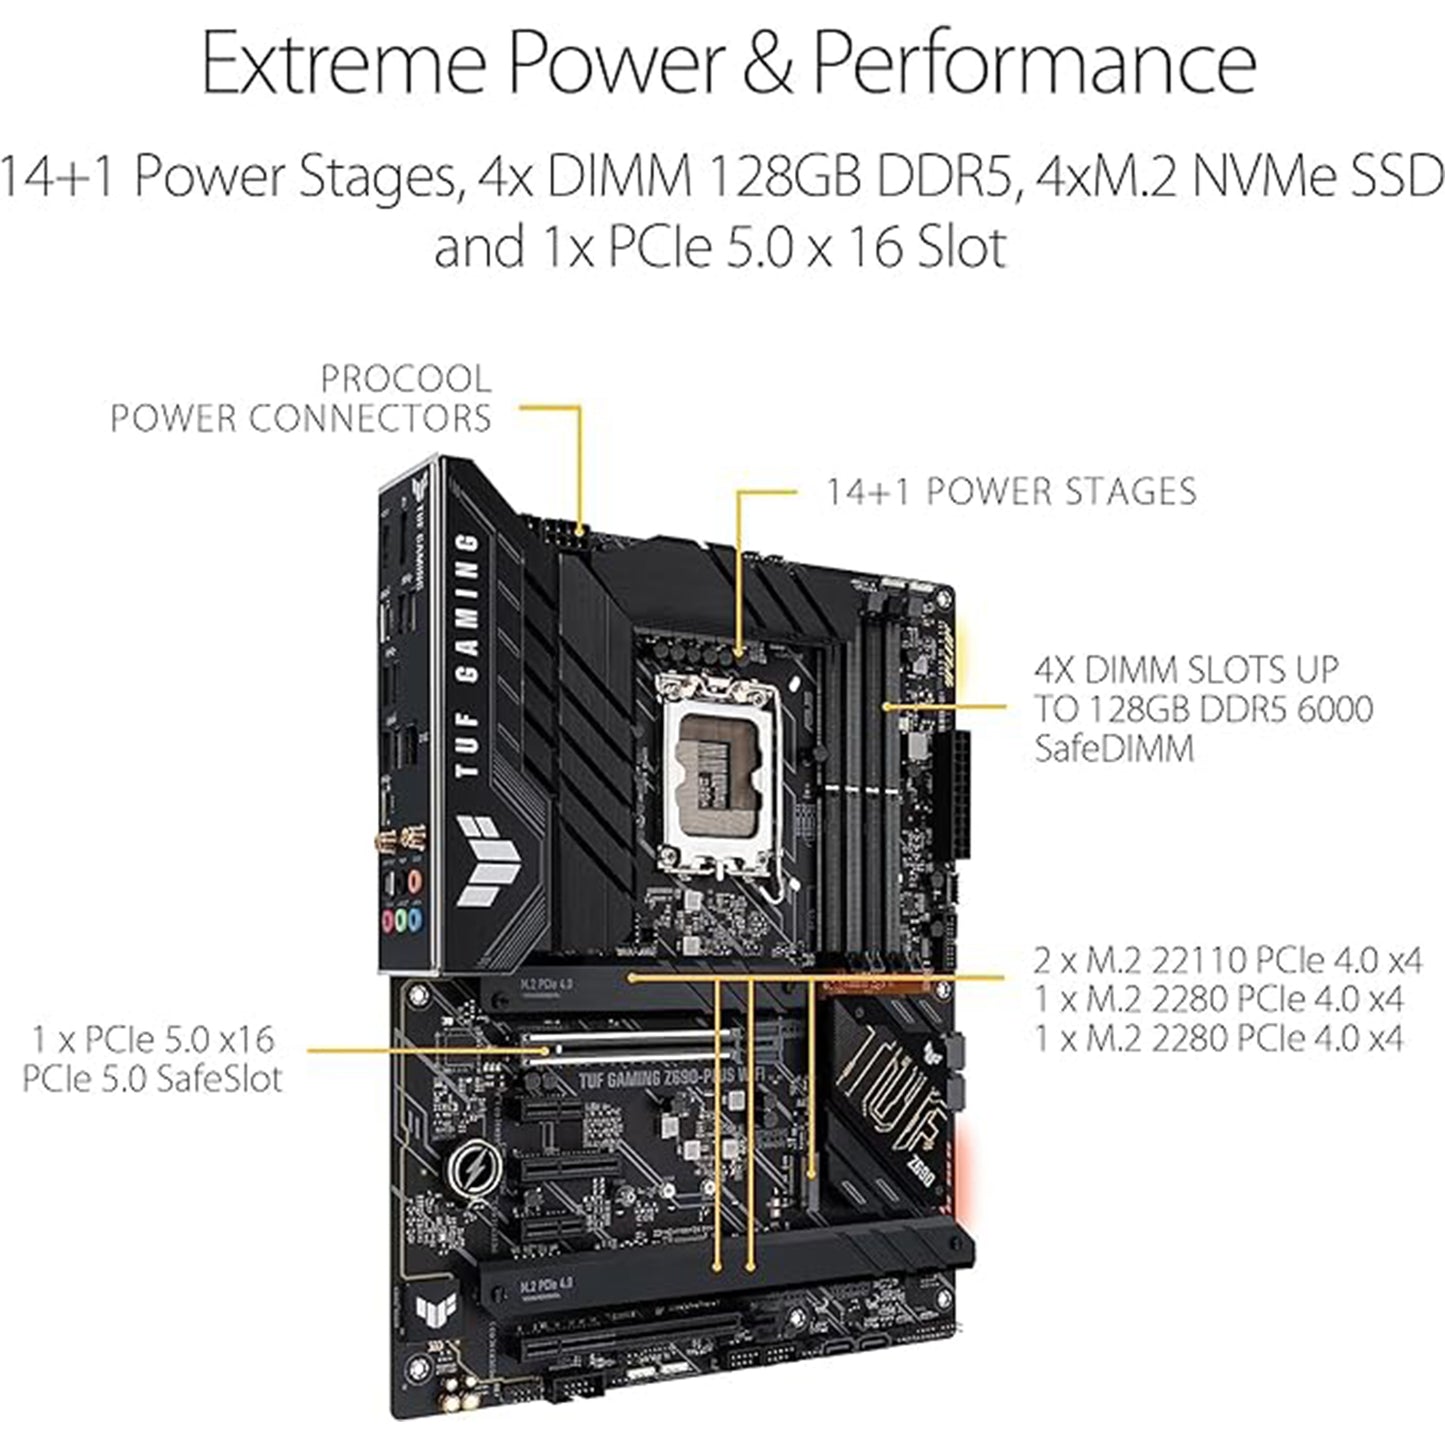 معالج Micro Center Intel Core i9-12900K 16 نواة يصل إلى 5.2 جيجا هرتز معالج سطح المكتب غير مقفل مع حزمة Intel UHD Graphics 770 المدمجة مع اللوحة الأم ASUS TUF Gaming Z690-PLUS WiFi LGA1700 DDR5 ATX 